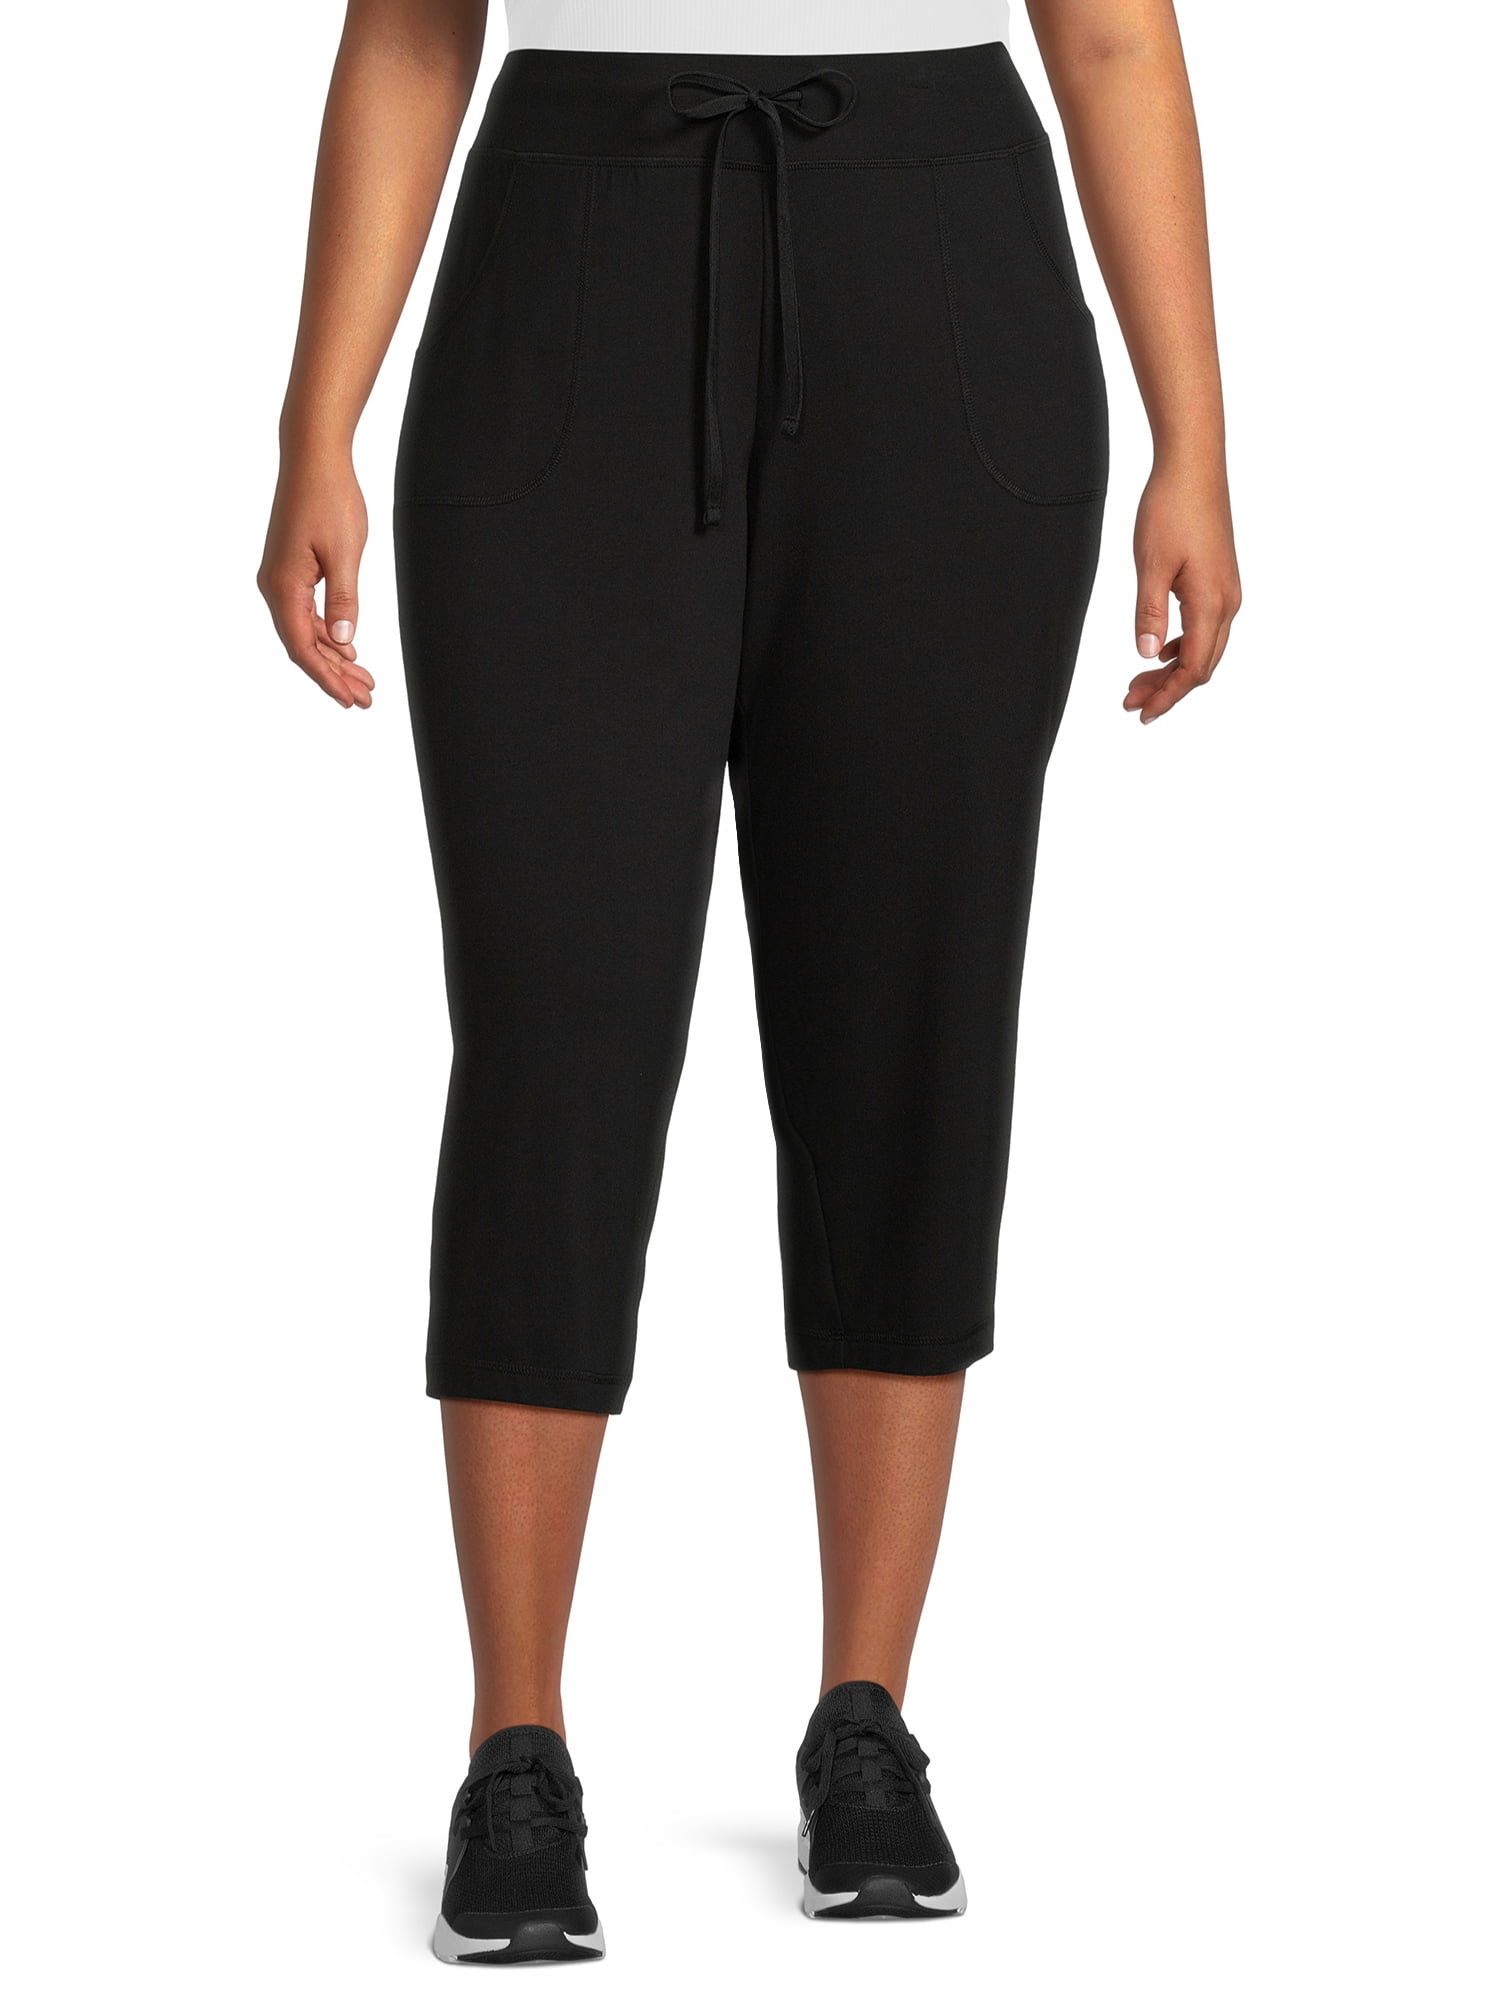 Athletic Works Women's Plus Size Athleisure Core Knit Capri Pants, Sizes 1X-4X  